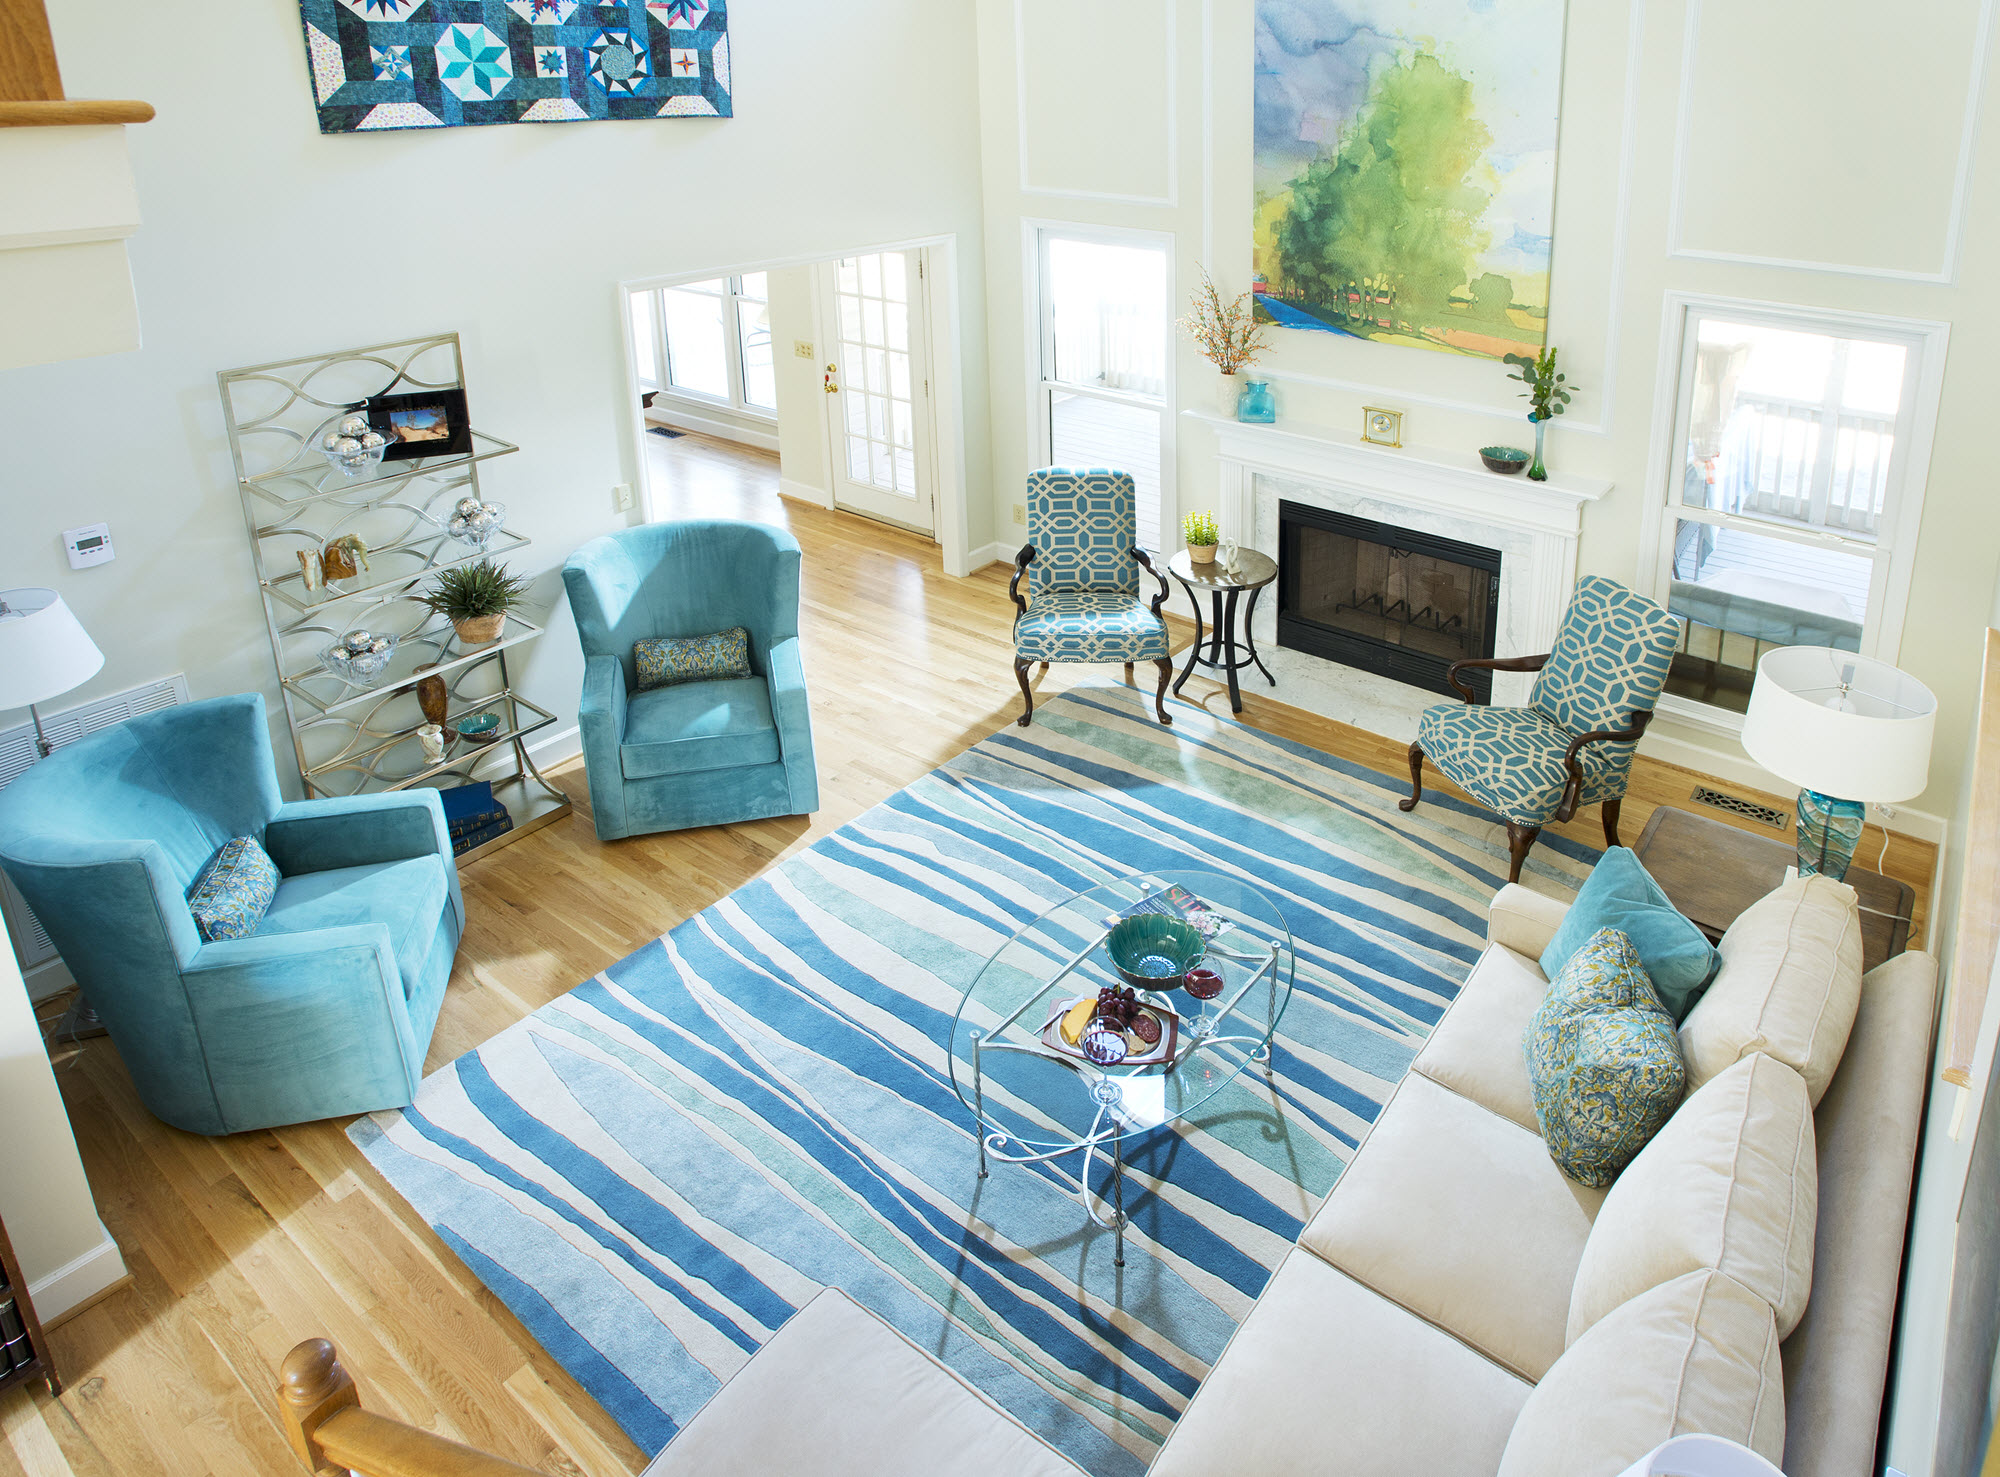 Contemporary Blue Living Room